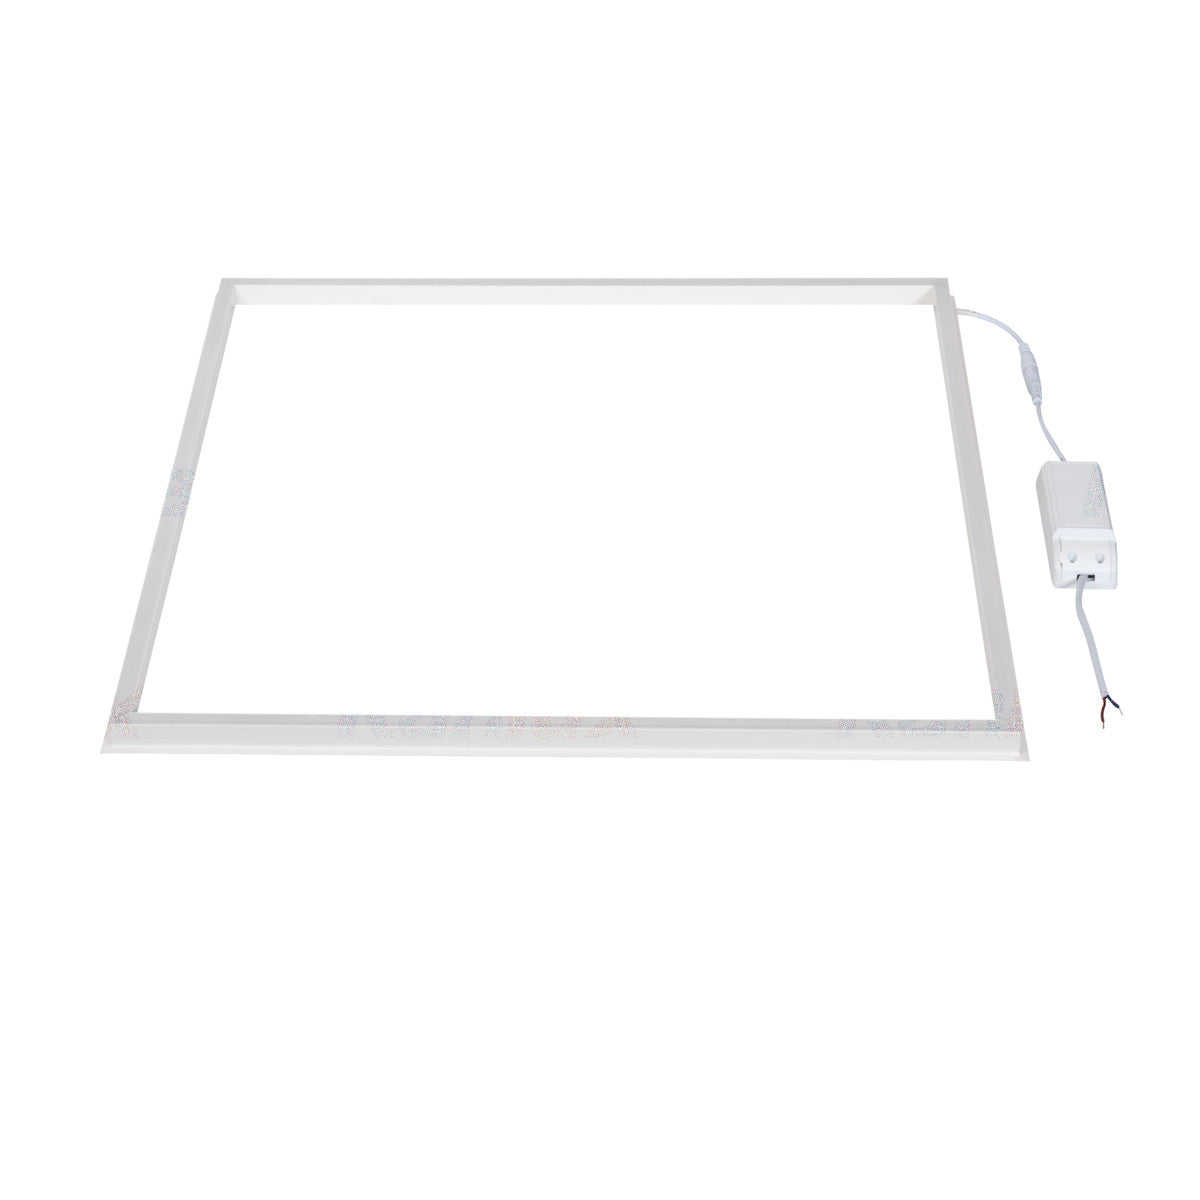 LED Frame Panel Light 40W 3600lm 6000K (Daylight White)